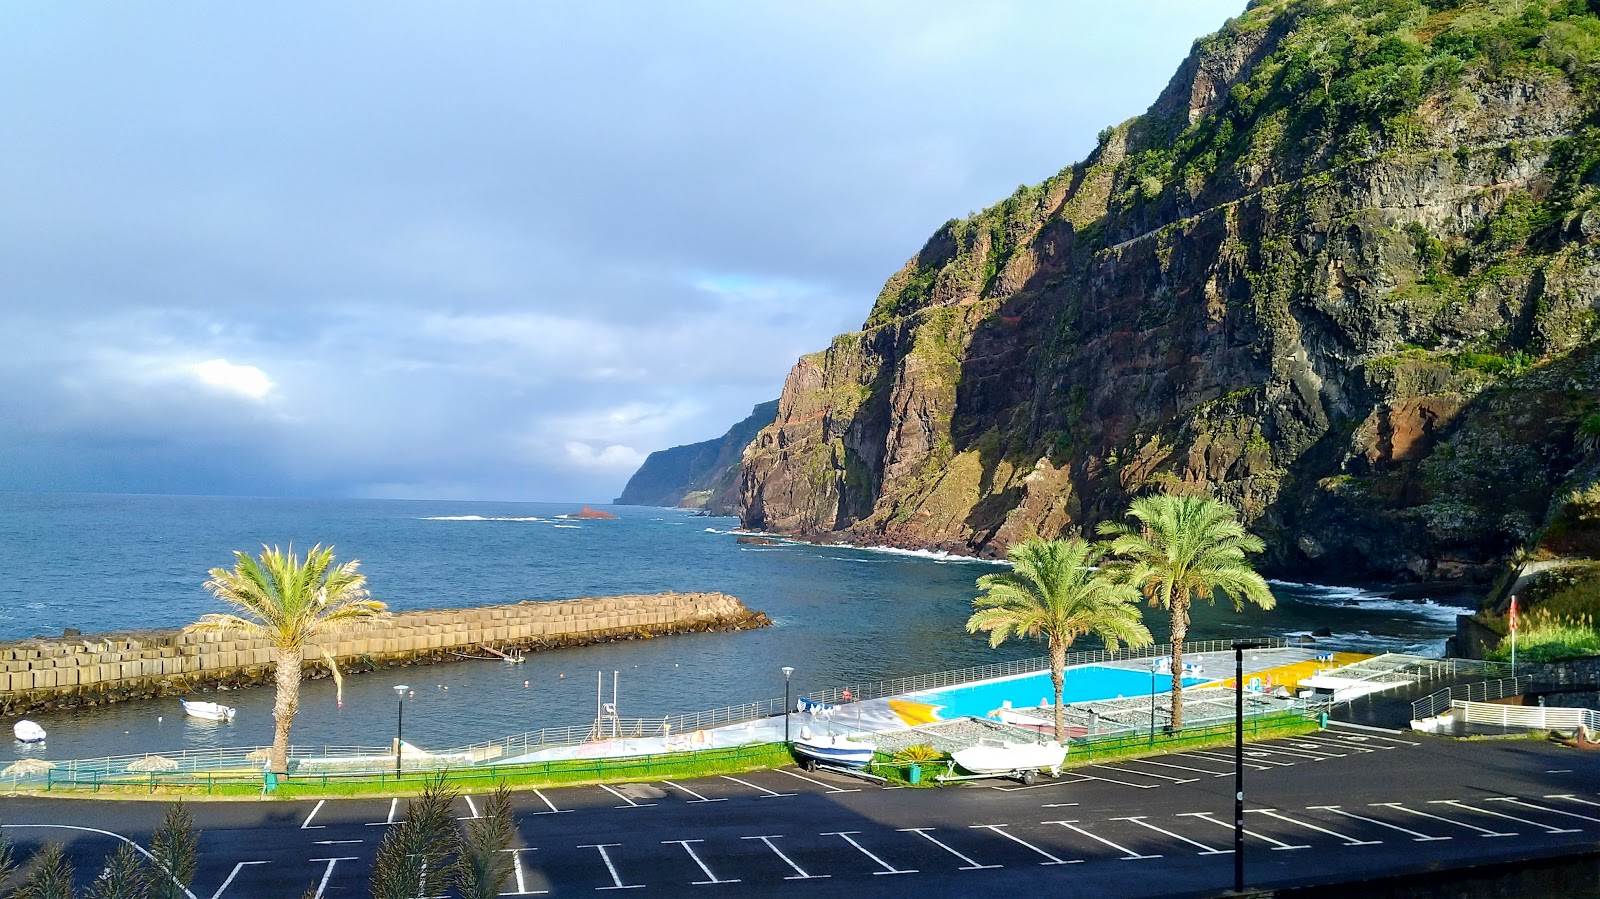 Piscinas de Ponta Delgada的照片 带有碧绿色纯水表面